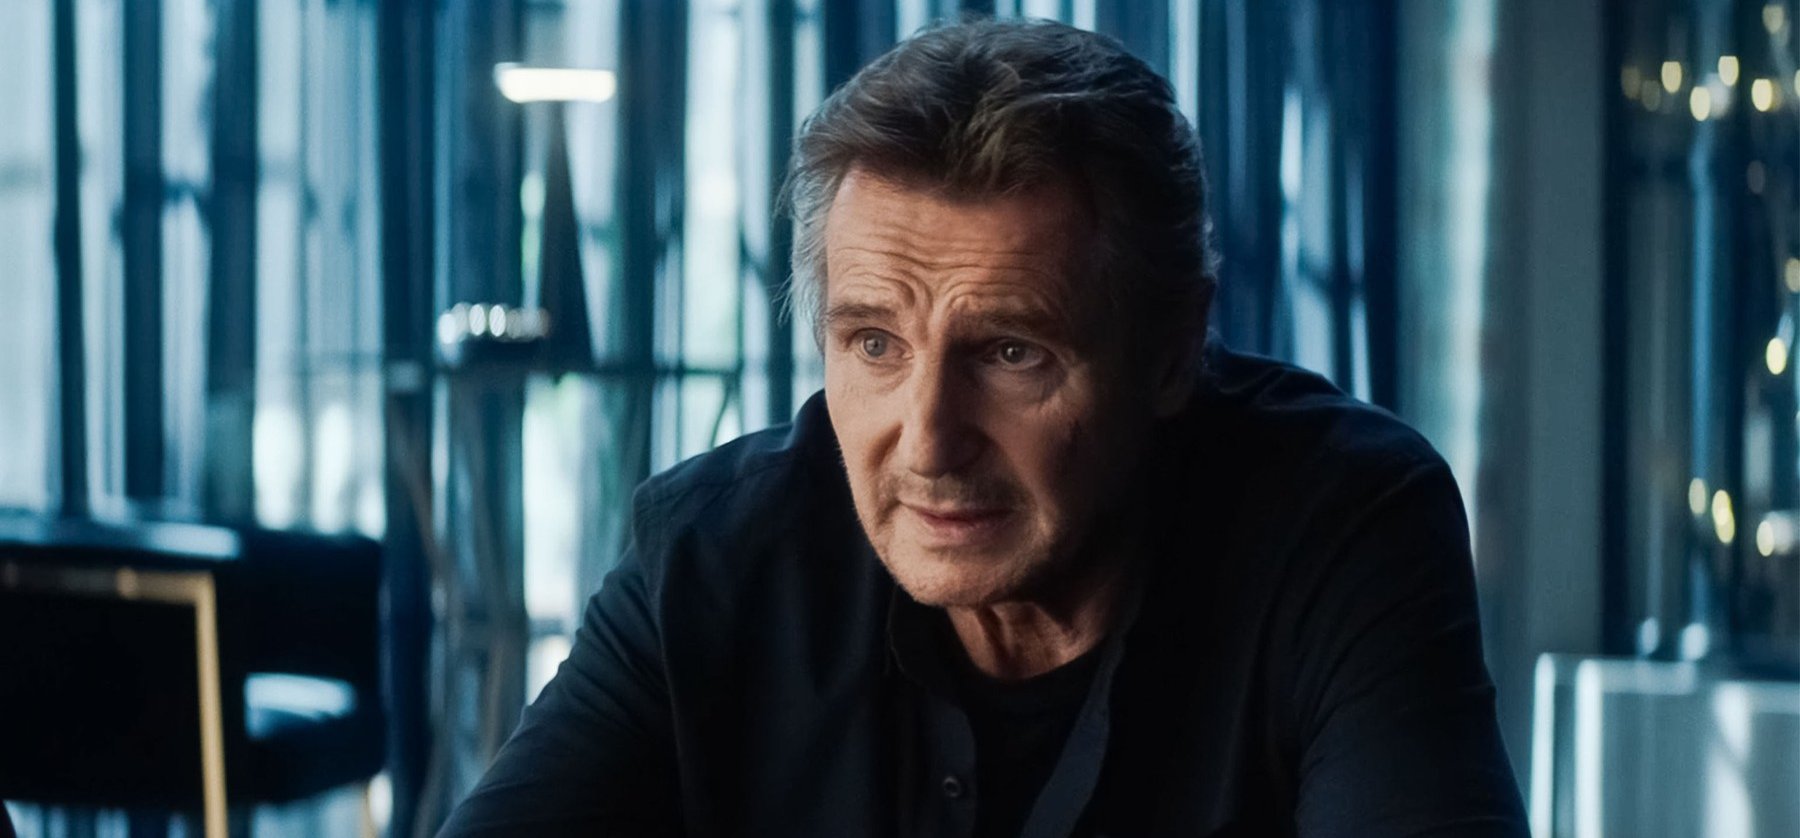 Liam Neeson átverte az egész világot, de jó oka volt rá